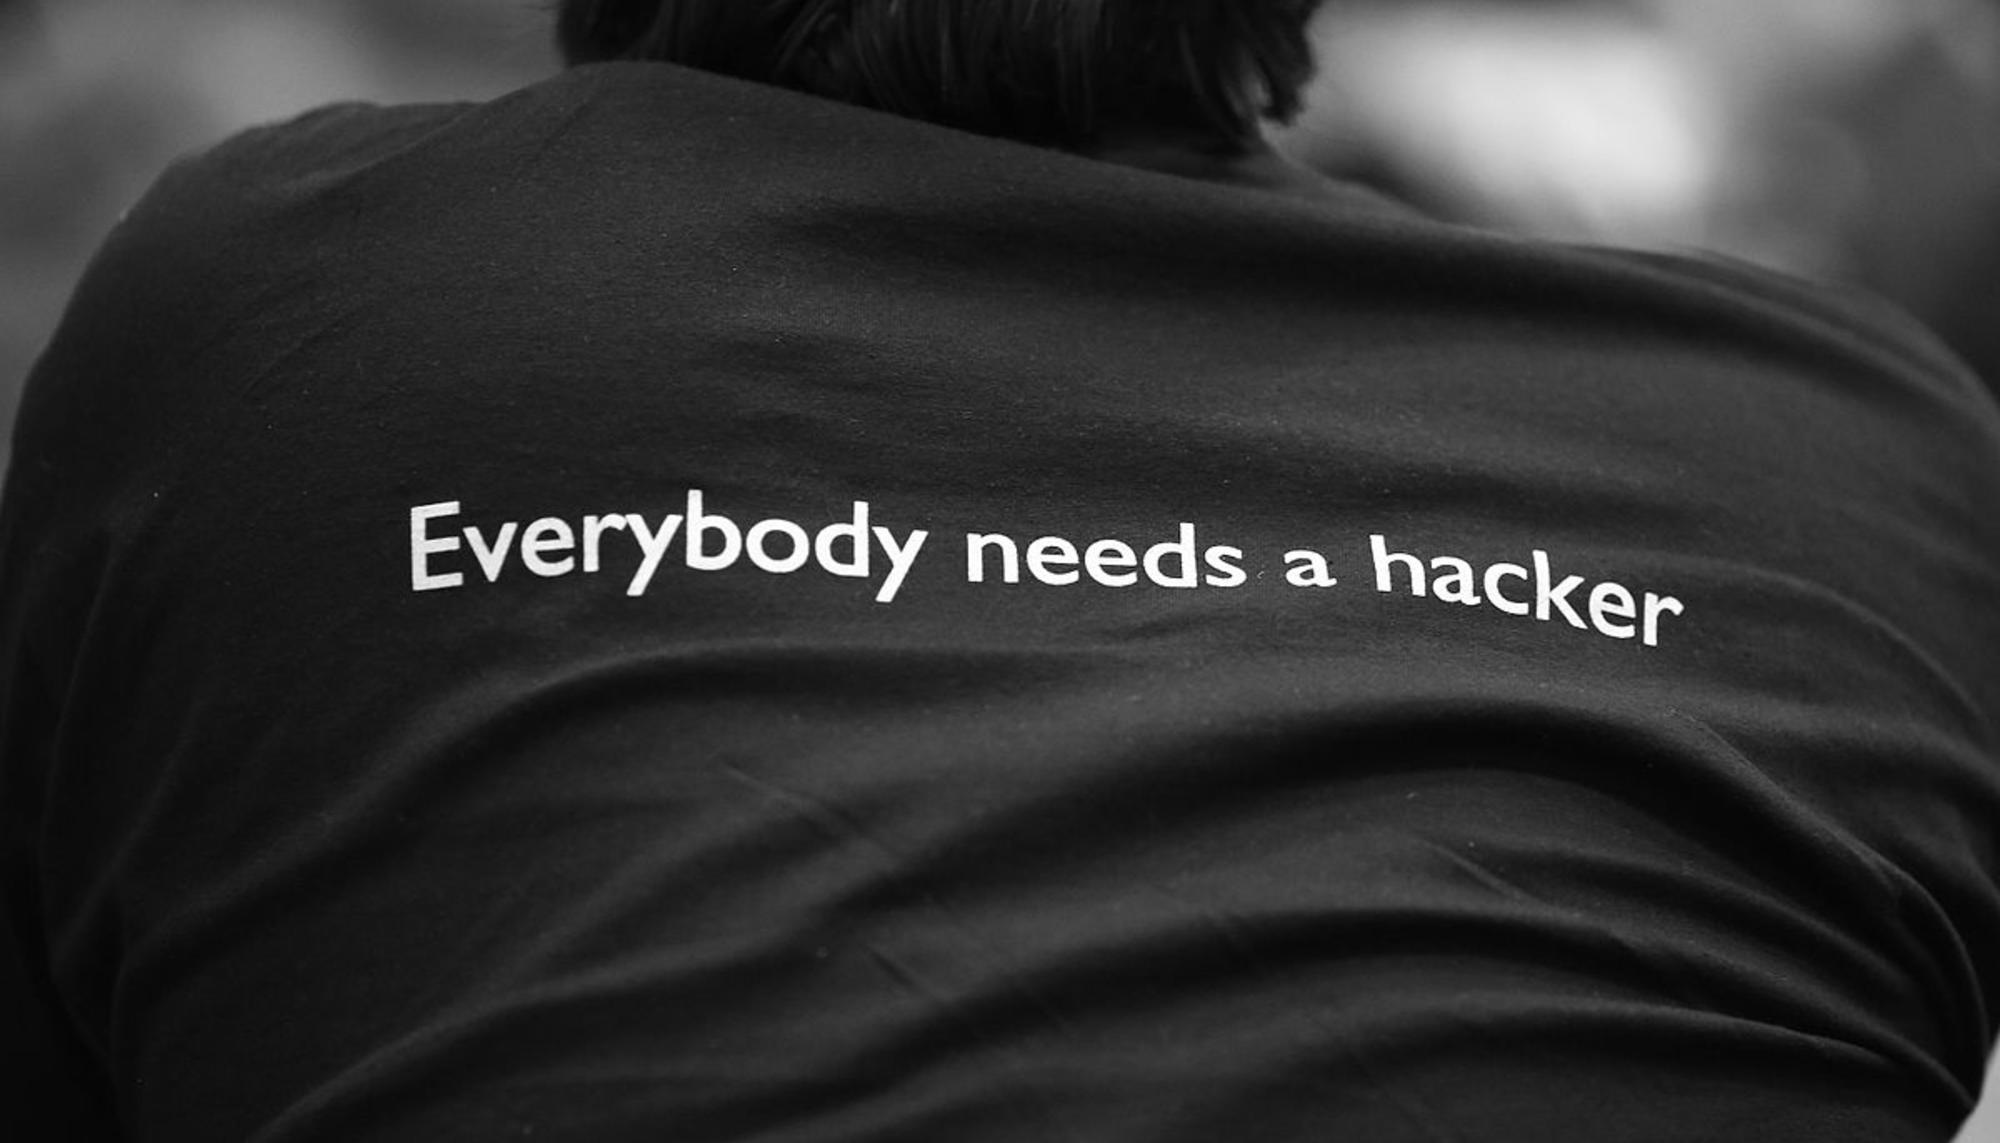 Todo el mundo necesita un hacker